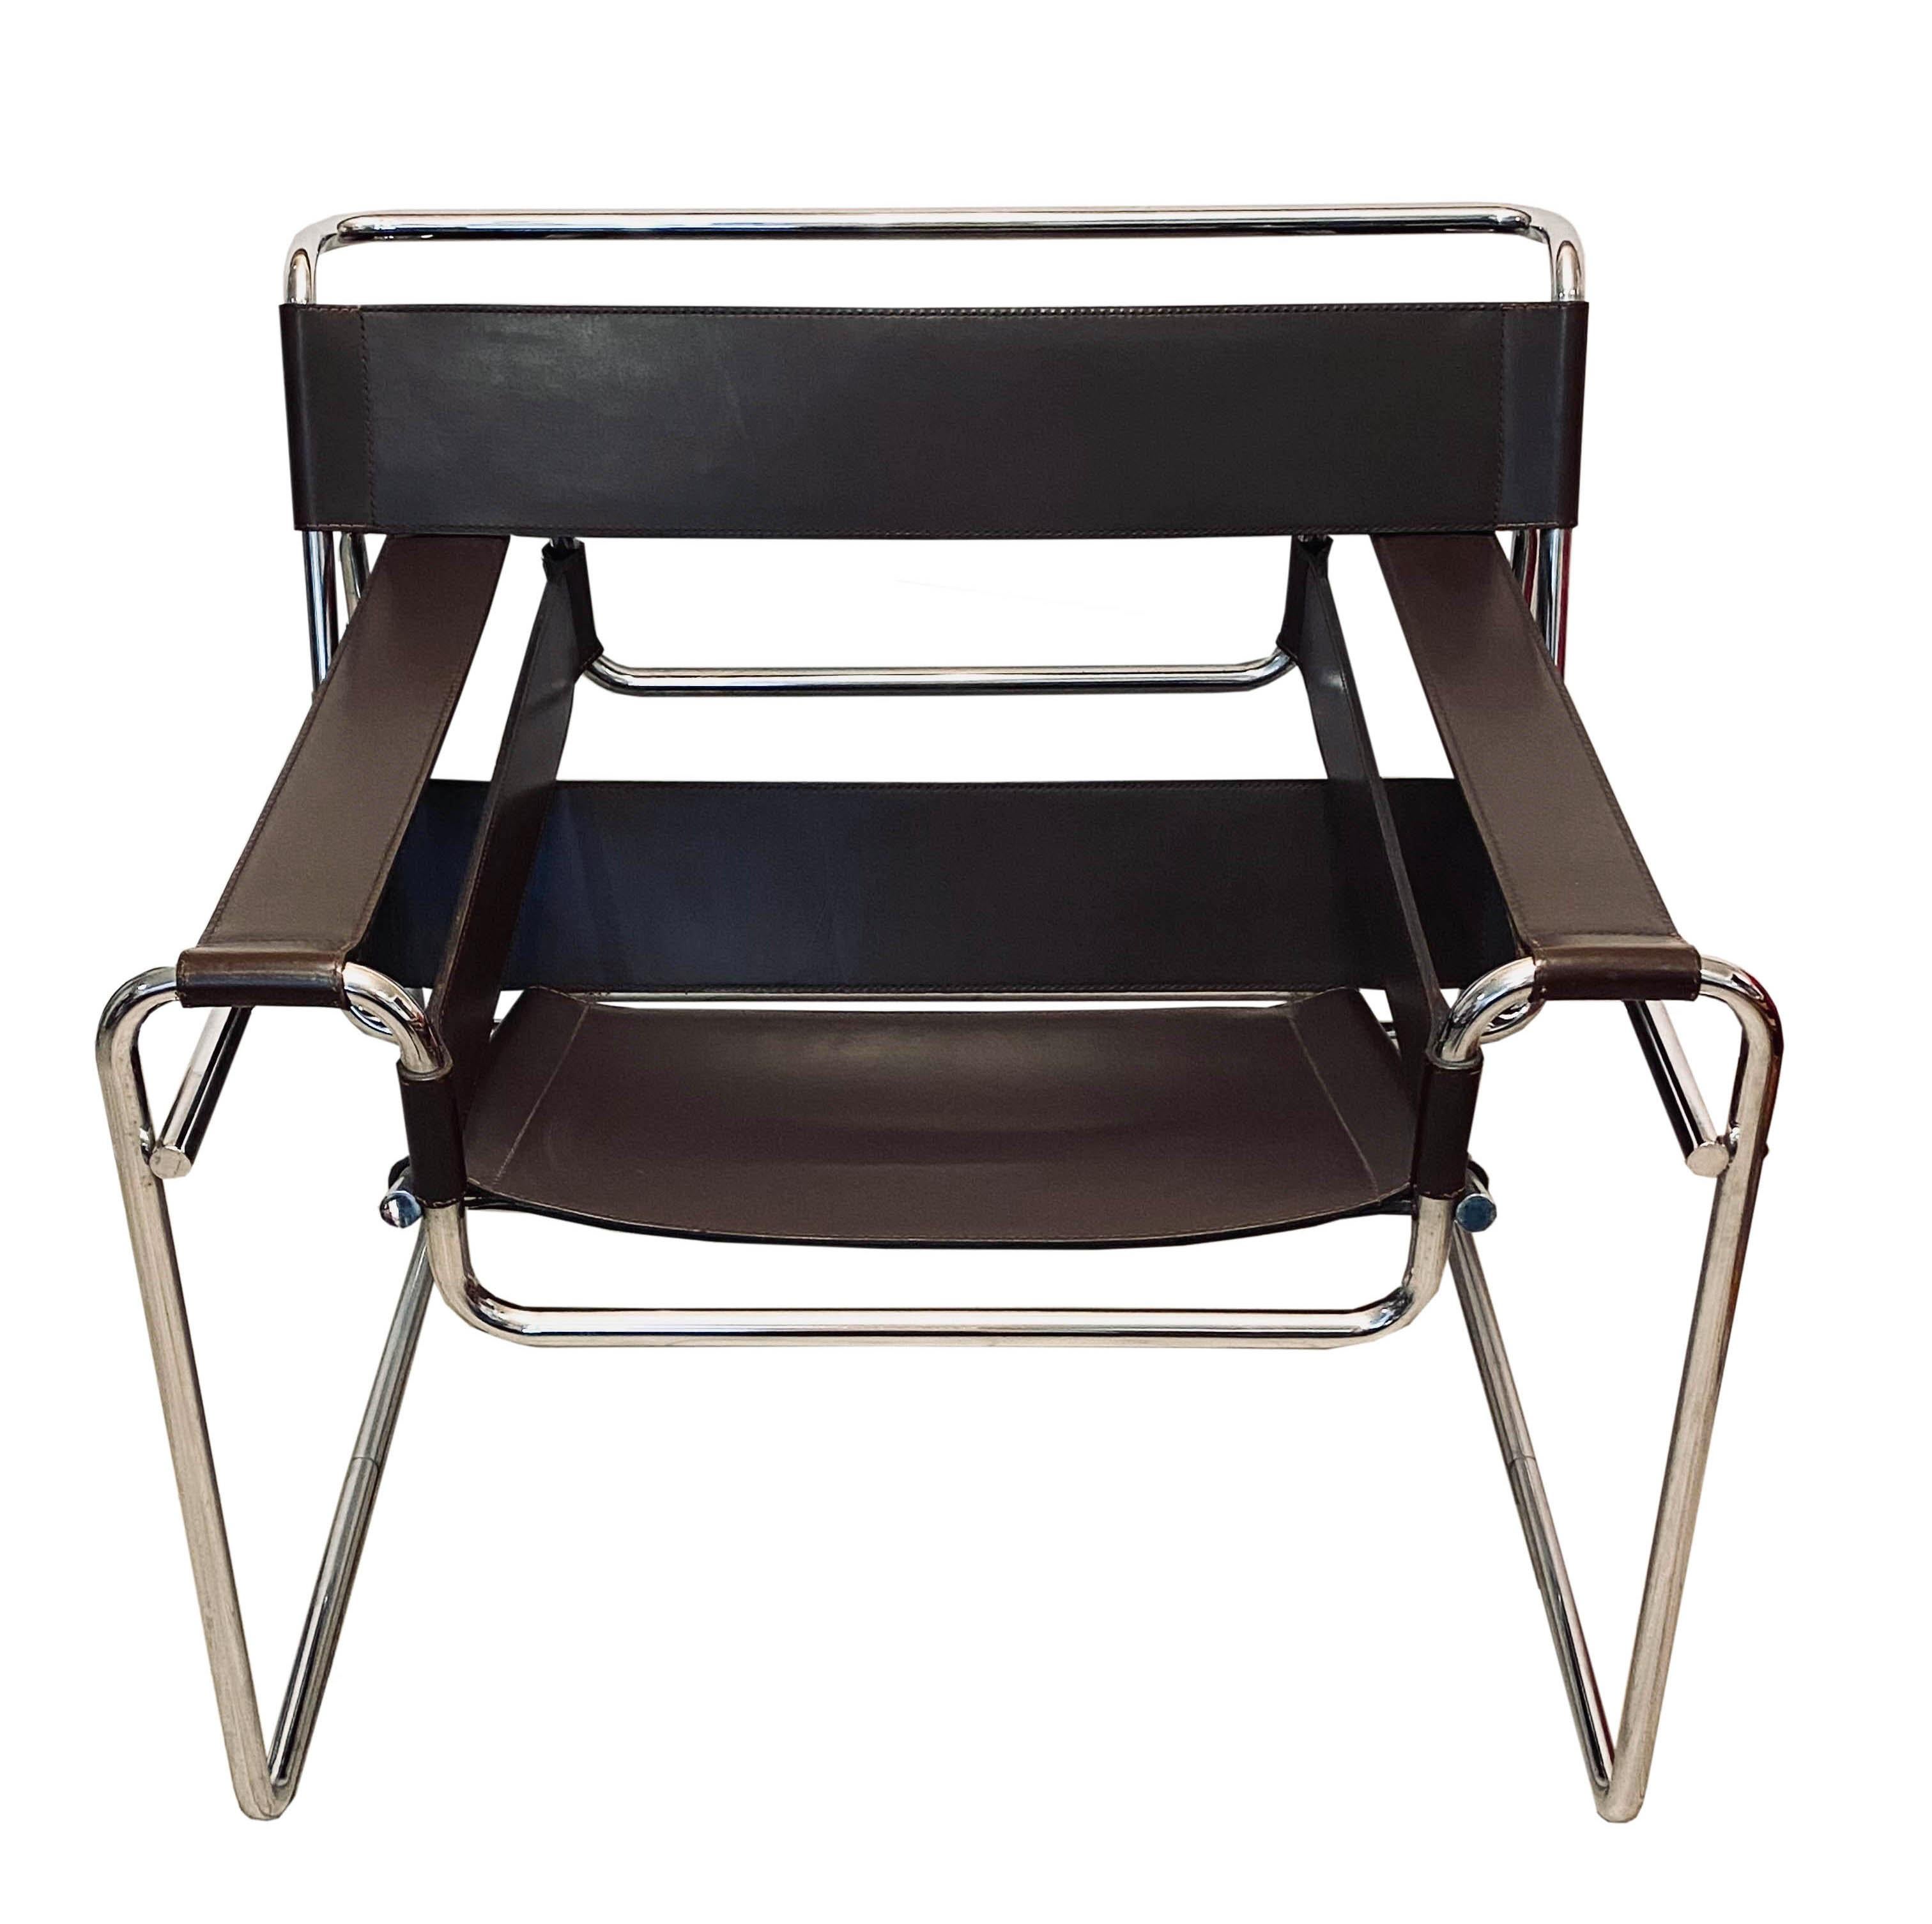 Fauteuil italien du milieu du siècle Wassily B3 en cuir brun par Breuer pour Gavina, 1960. Chaise de salon Wassily également connue sous le nom de modèle B 3, avec assise rectangulaire en cuir brun foncé et structure tubulaire en acier chromé.